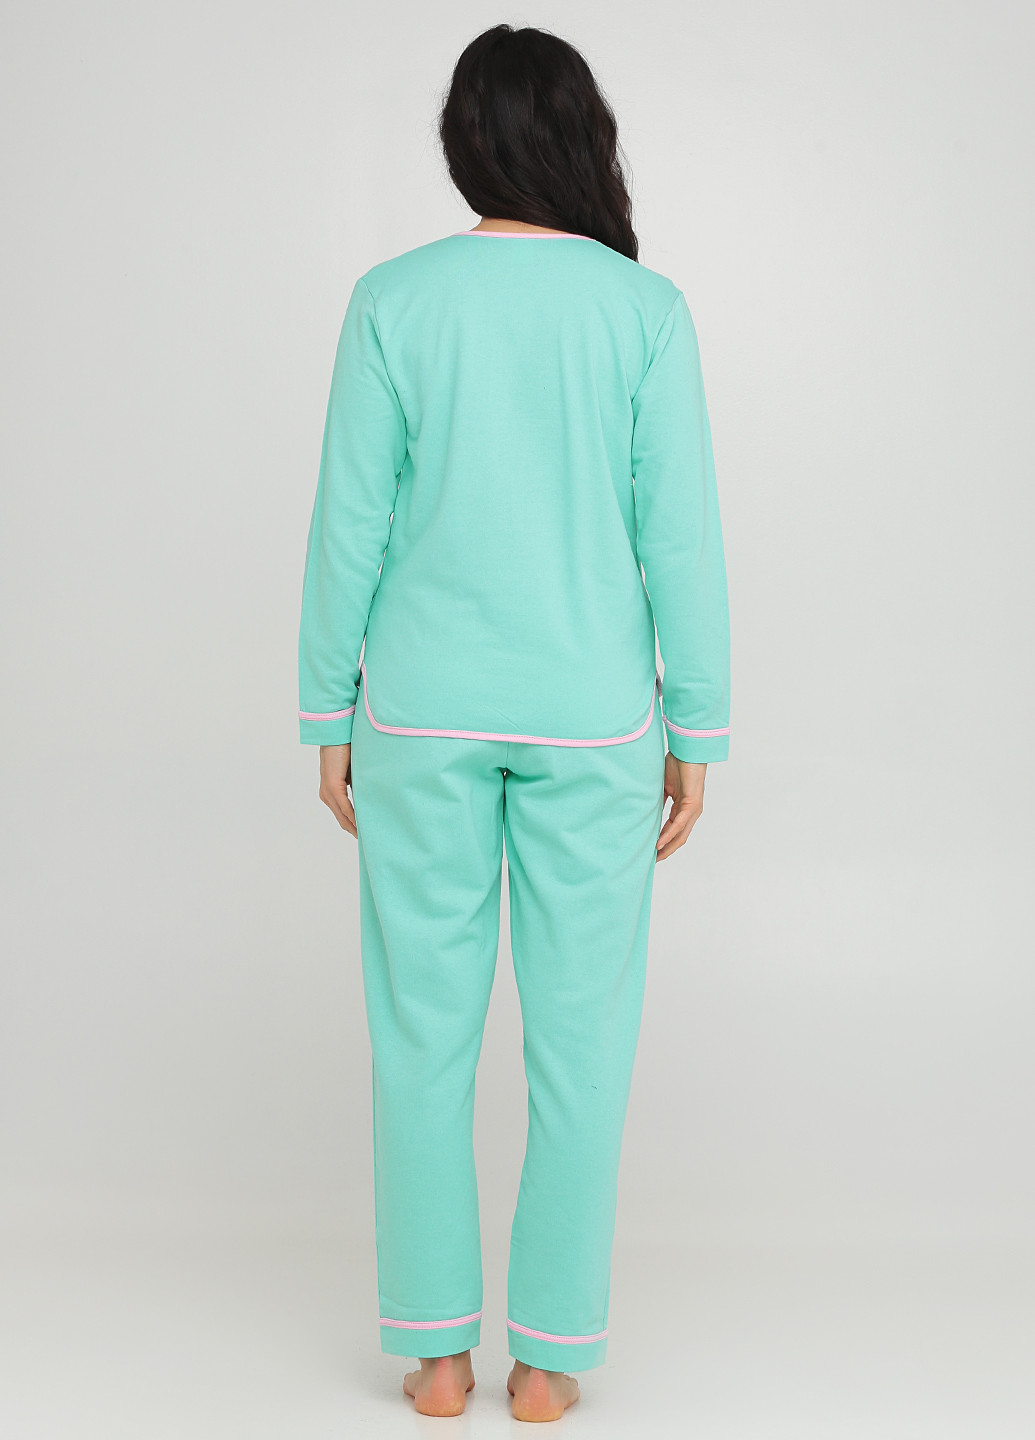 Салатовая всесезон пижама (лонгслив, брюки, маска) лонгслив + брюки Трикомир